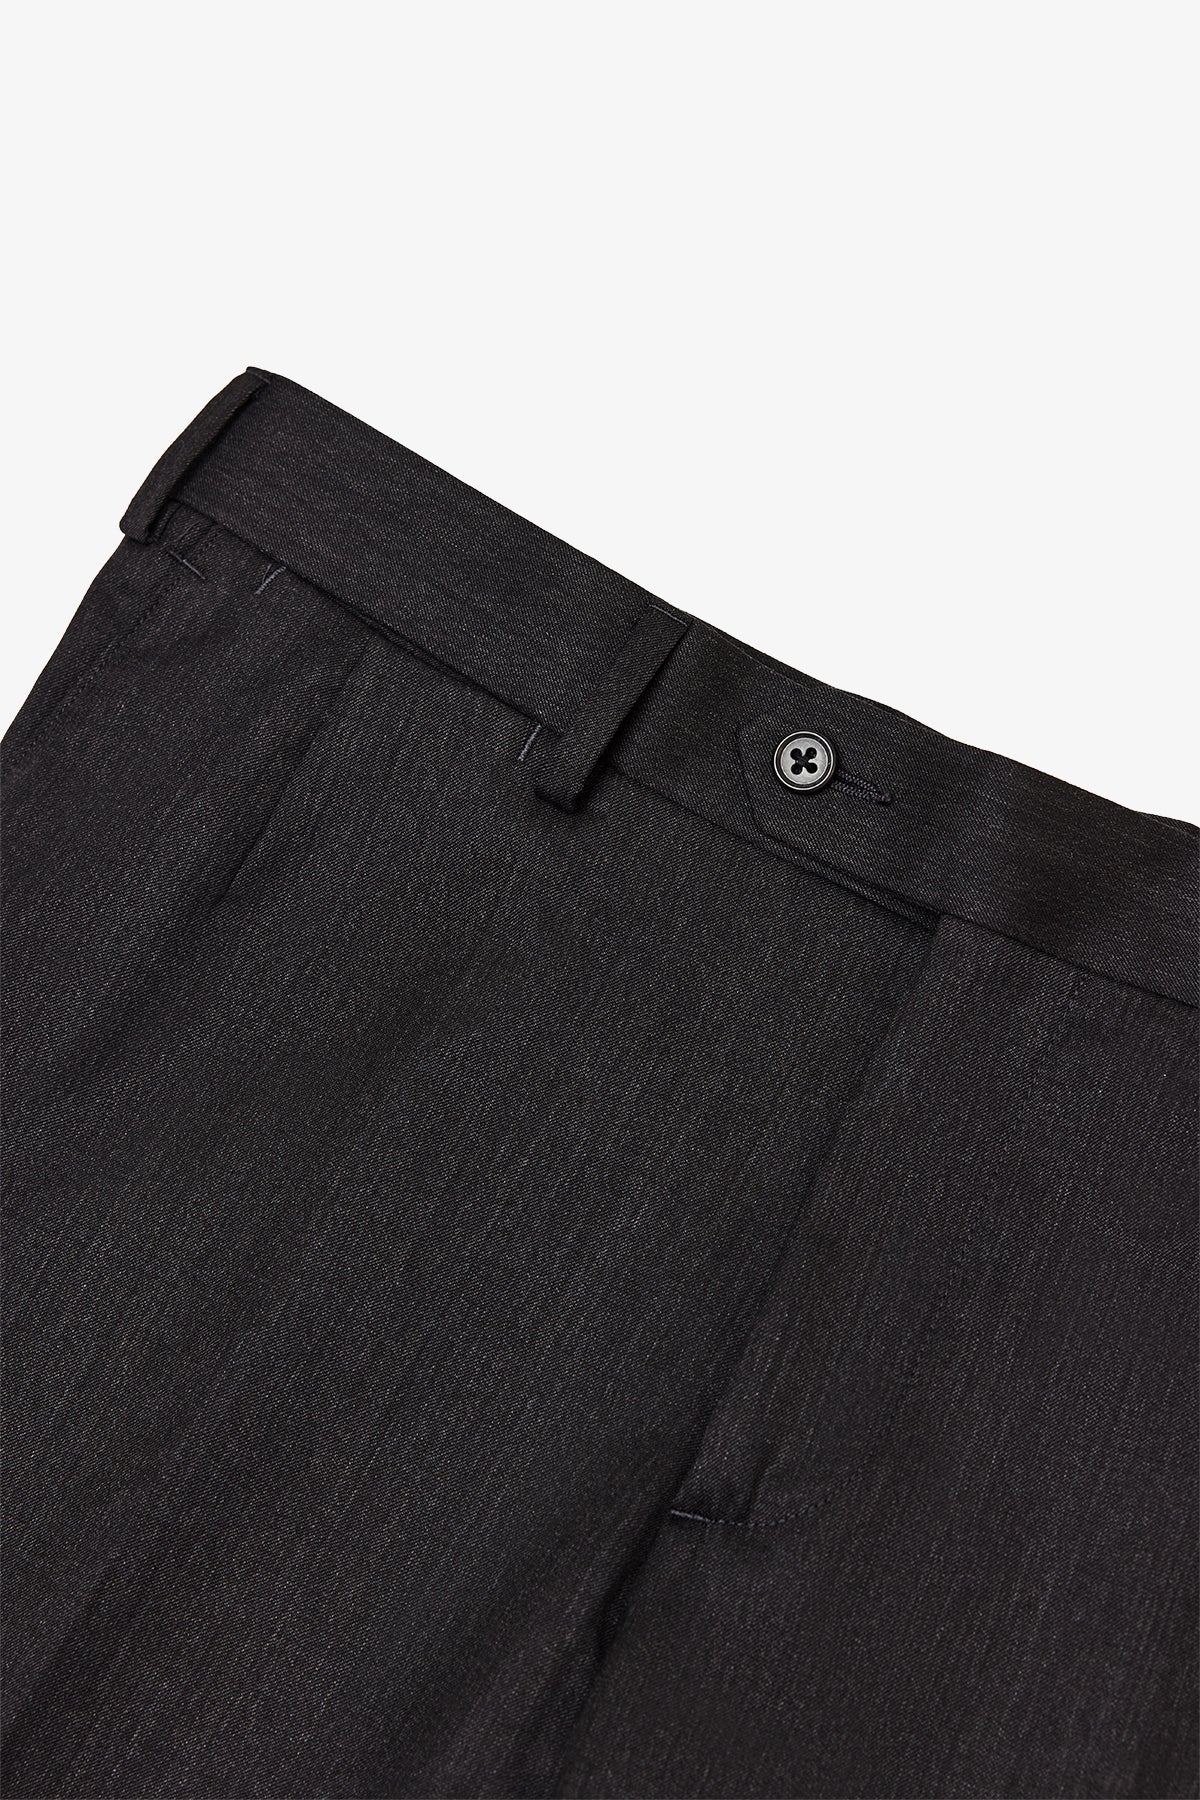 Montclair - Charcoal Trouser